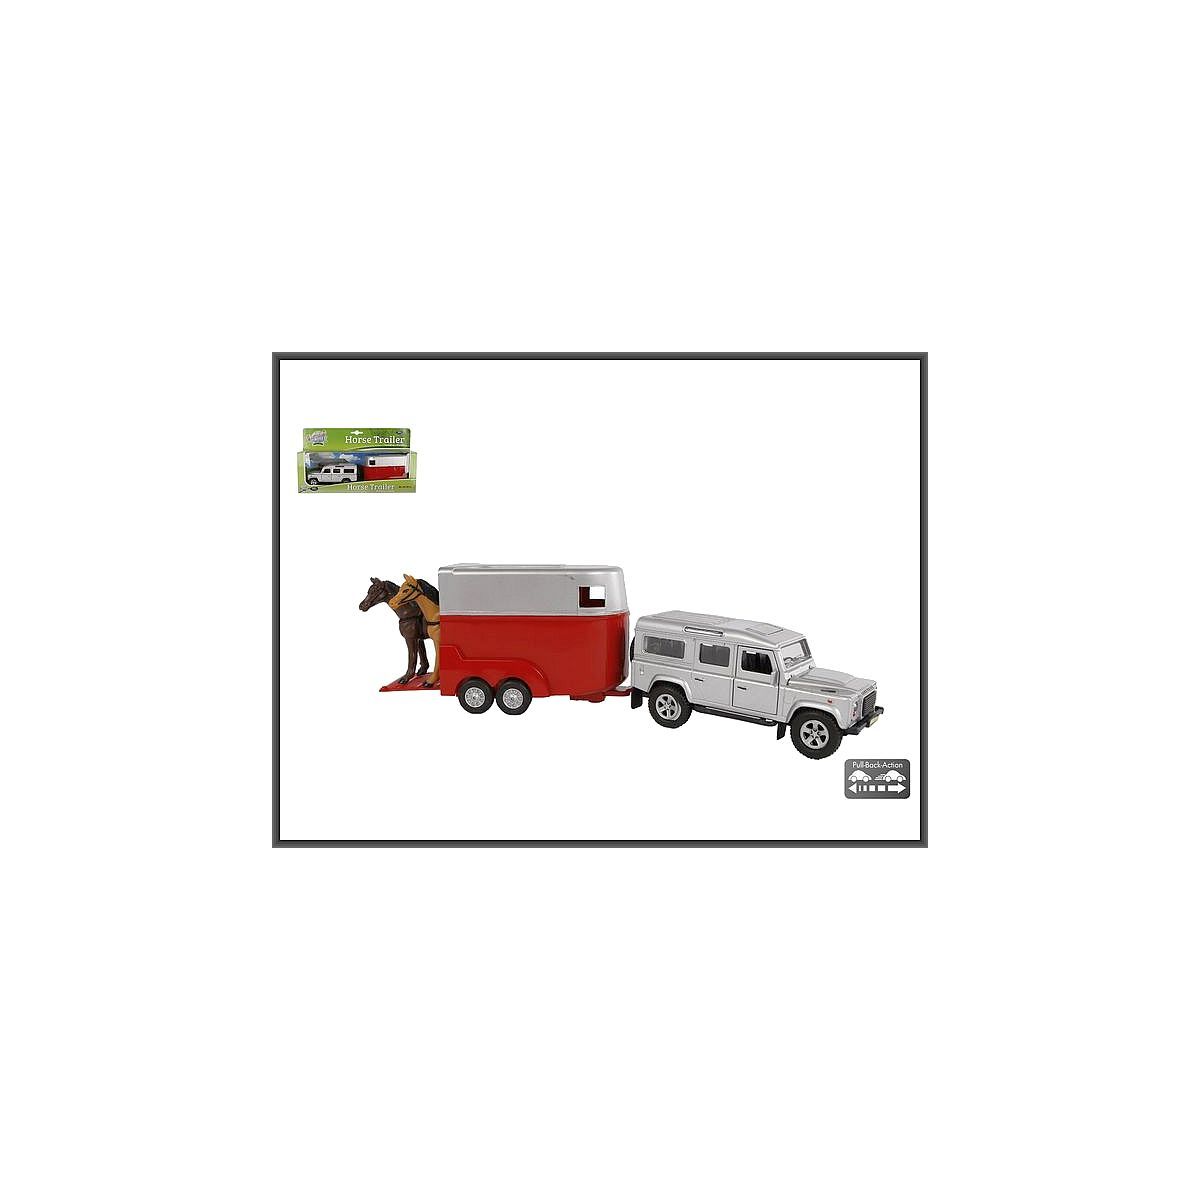 Samochód Land Rover z przyczepą do transportu koni Hipo (521712)